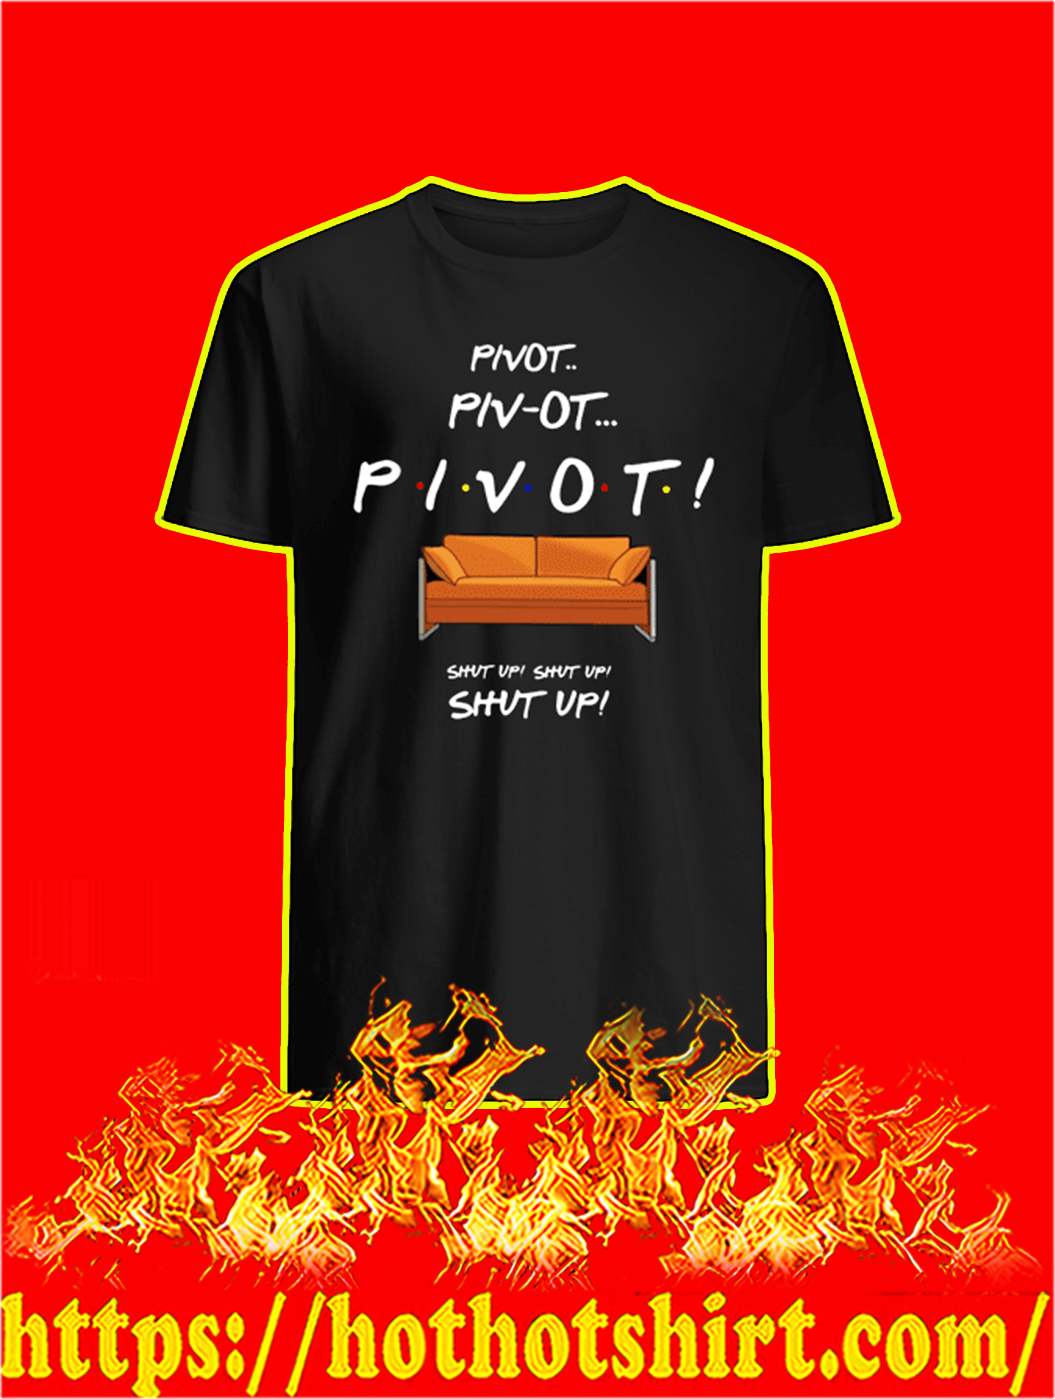 Pivot Shut Up Friends shirt and longsleeve tee